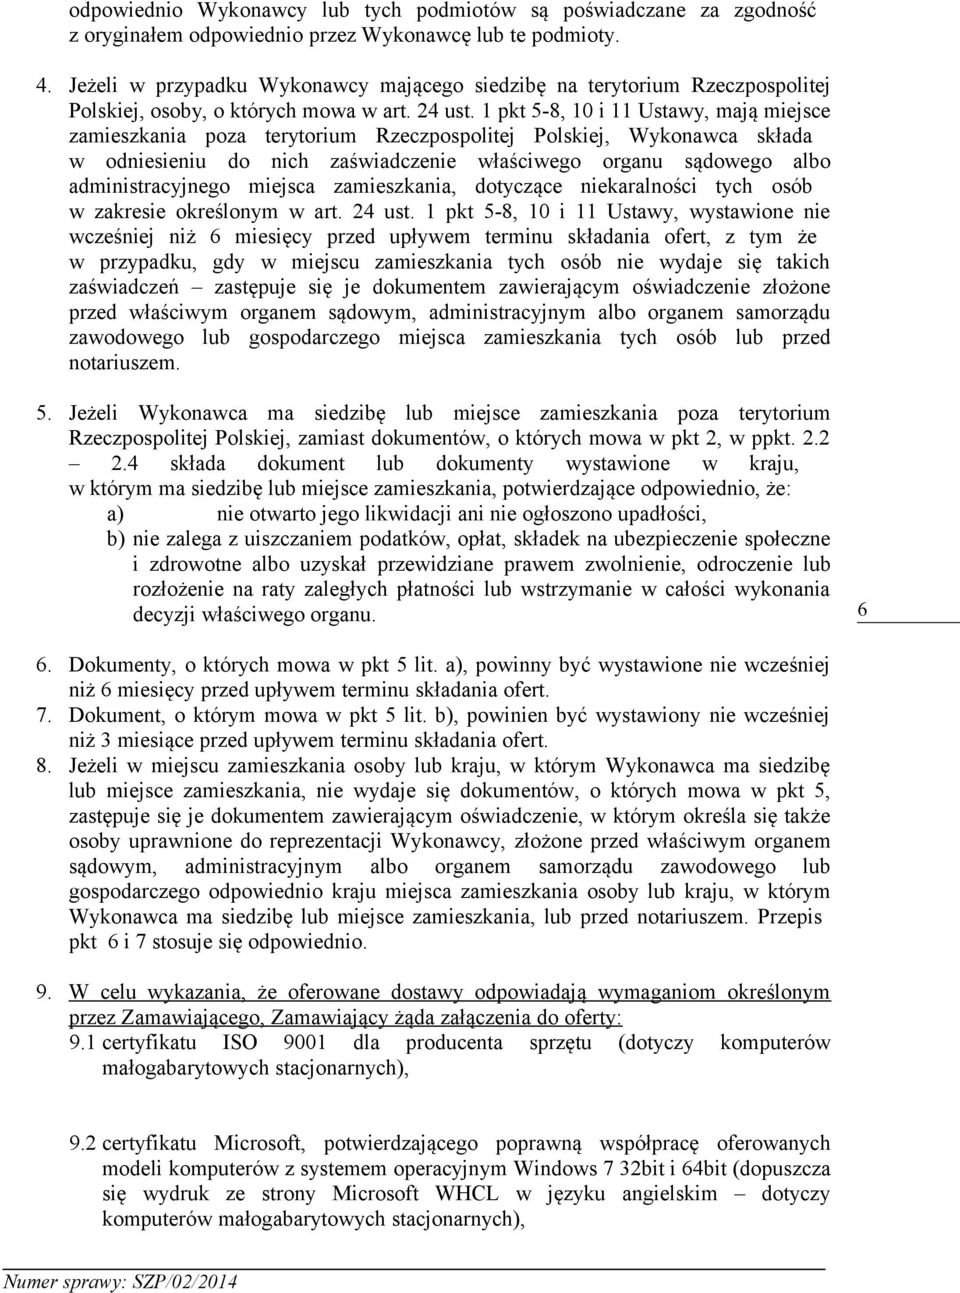 1 pkt 5-8, 10 i 11 Ustawy, mają miejsce zamieszkania poza terytorium Rzeczpospolitej Polskiej, Wykonawca składa w odniesieniu do nich zaświadczenie właściwego organu sądowego albo administracyjnego